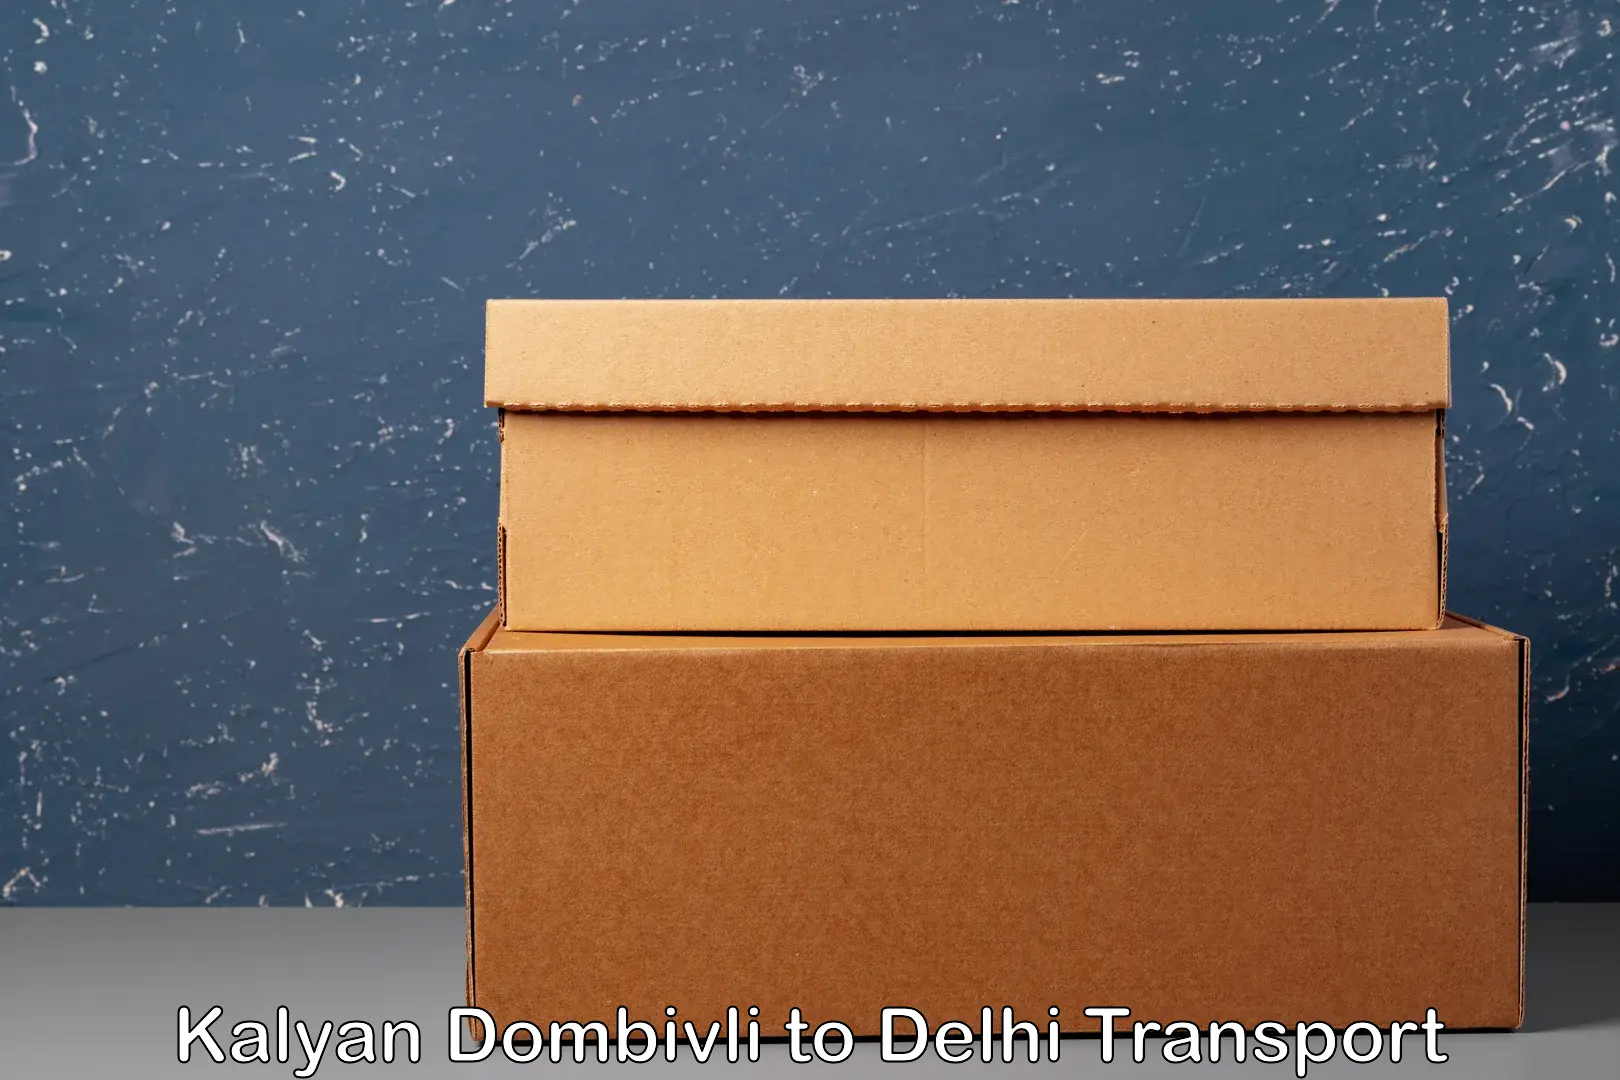 Shipping services Kalyan Dombivli to Jamia Millia Islamia New Delhi